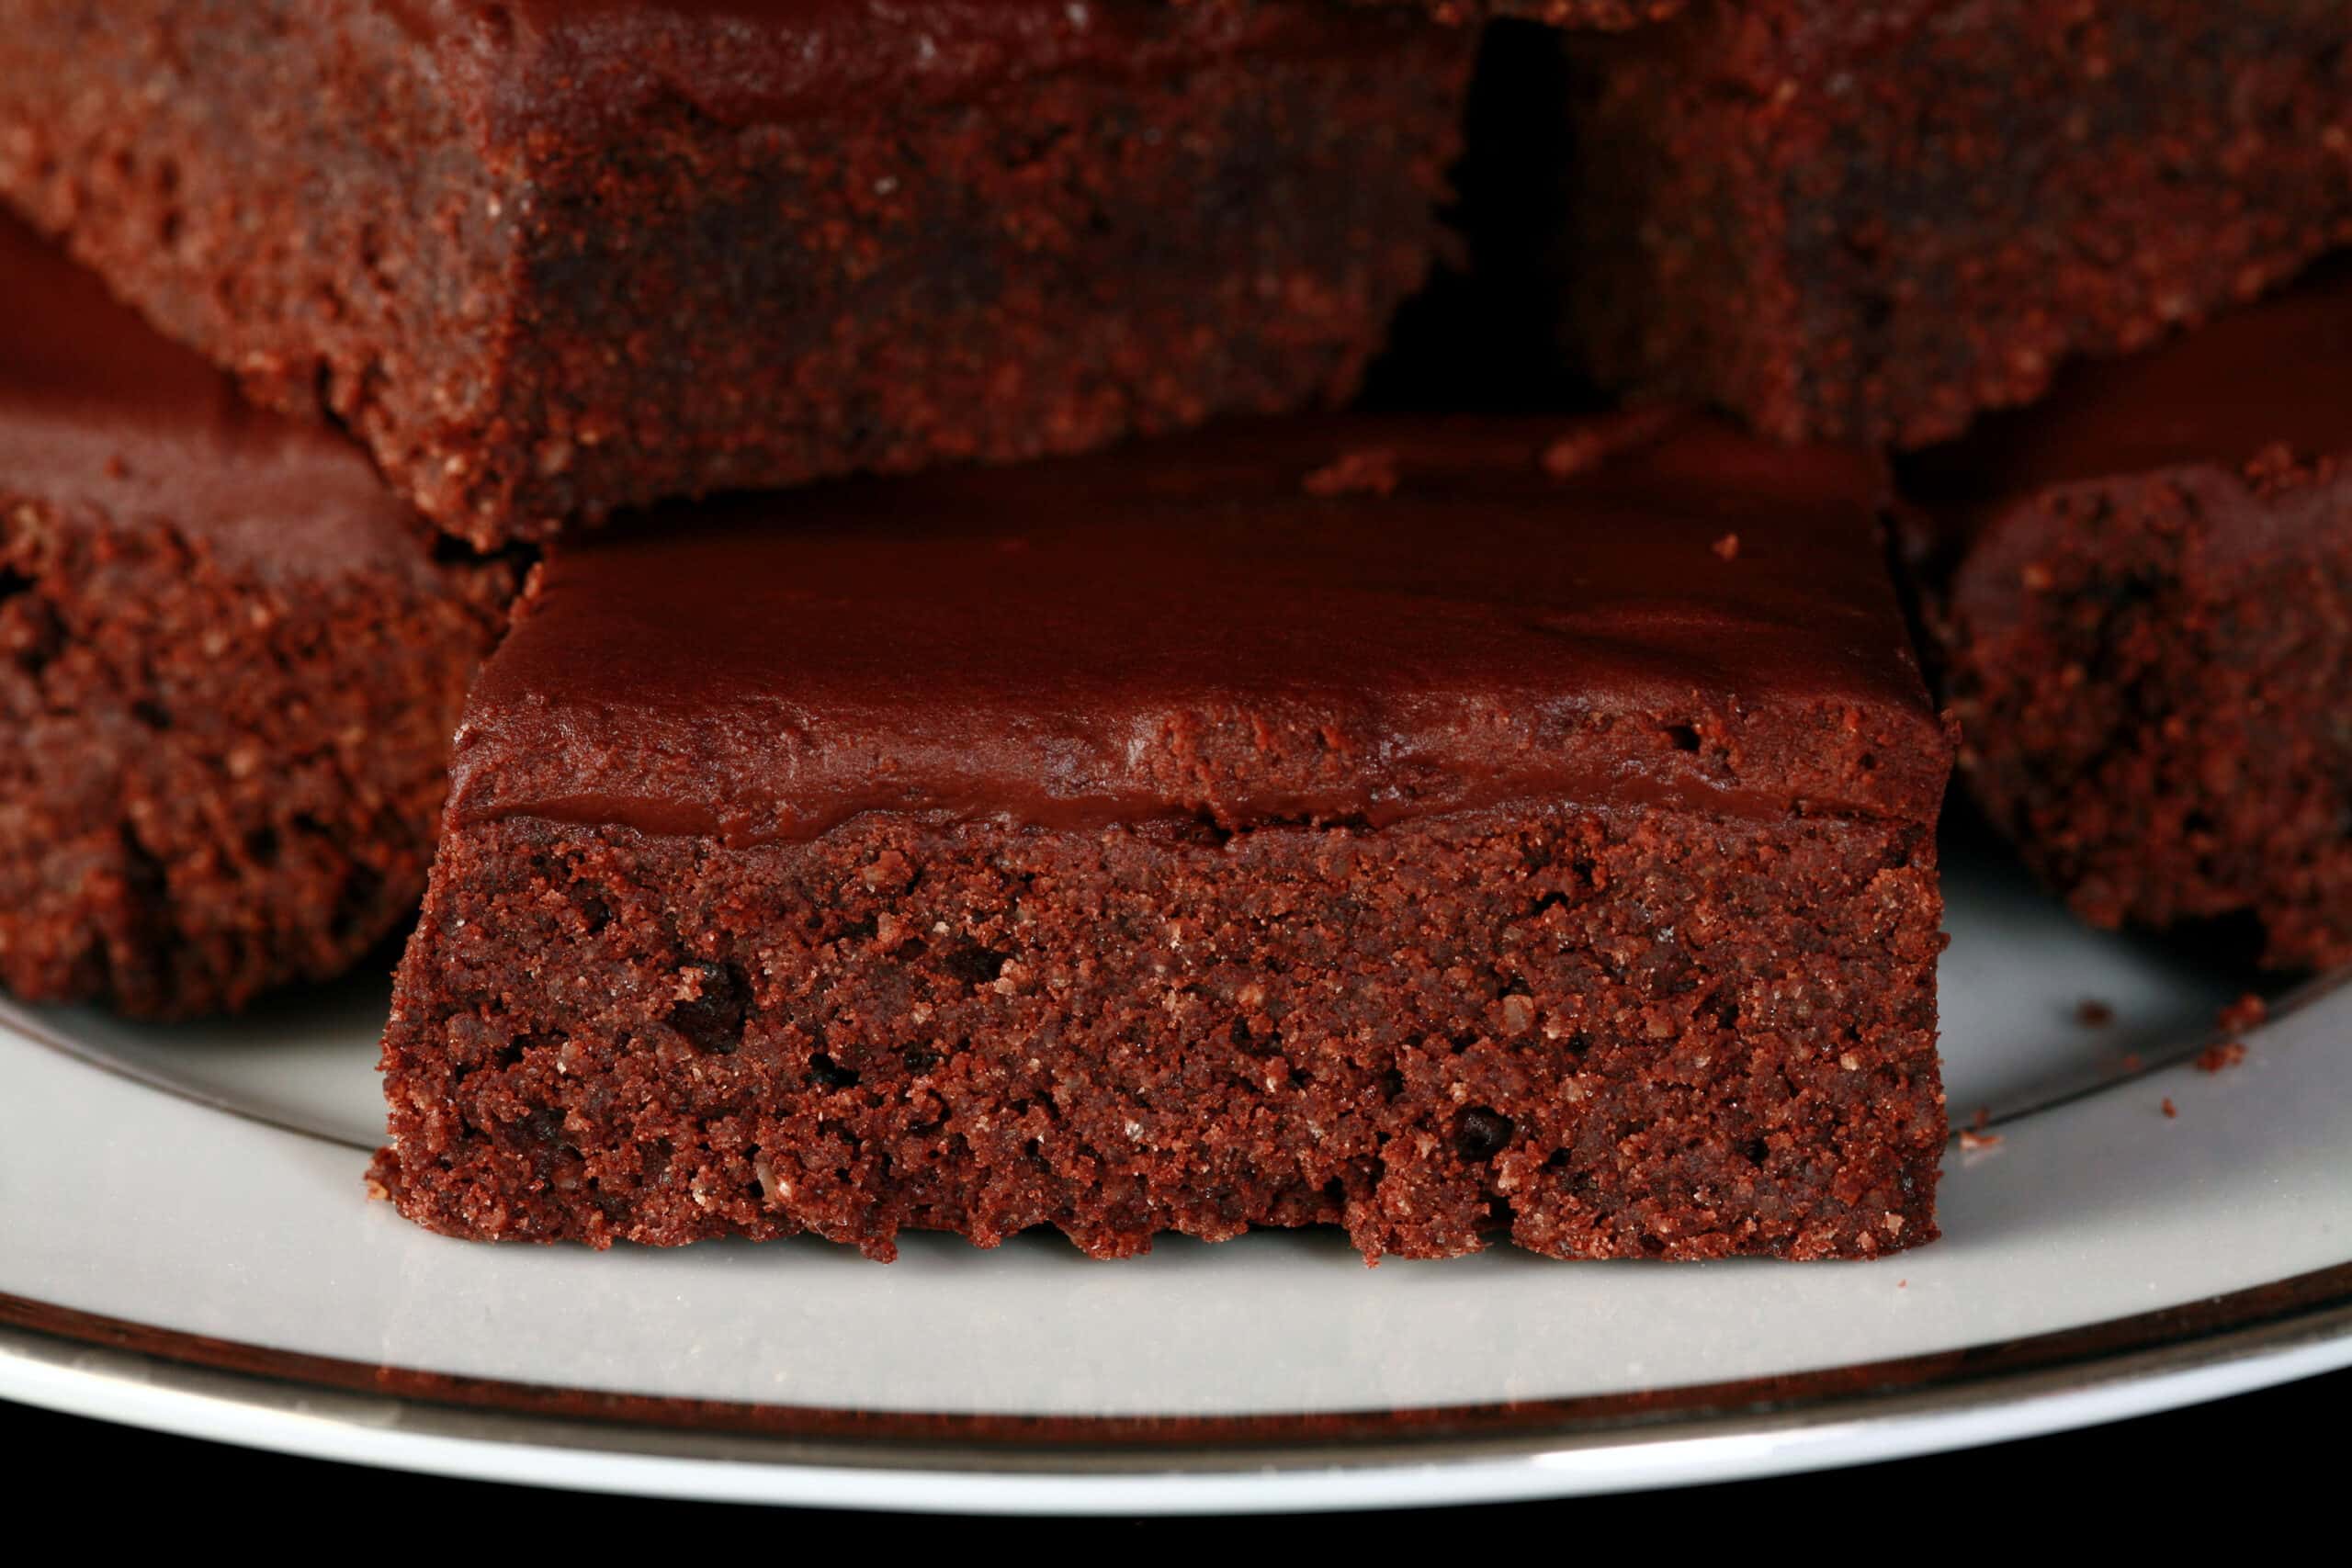 A close up photo of a keto brownie with chocolate glaze.